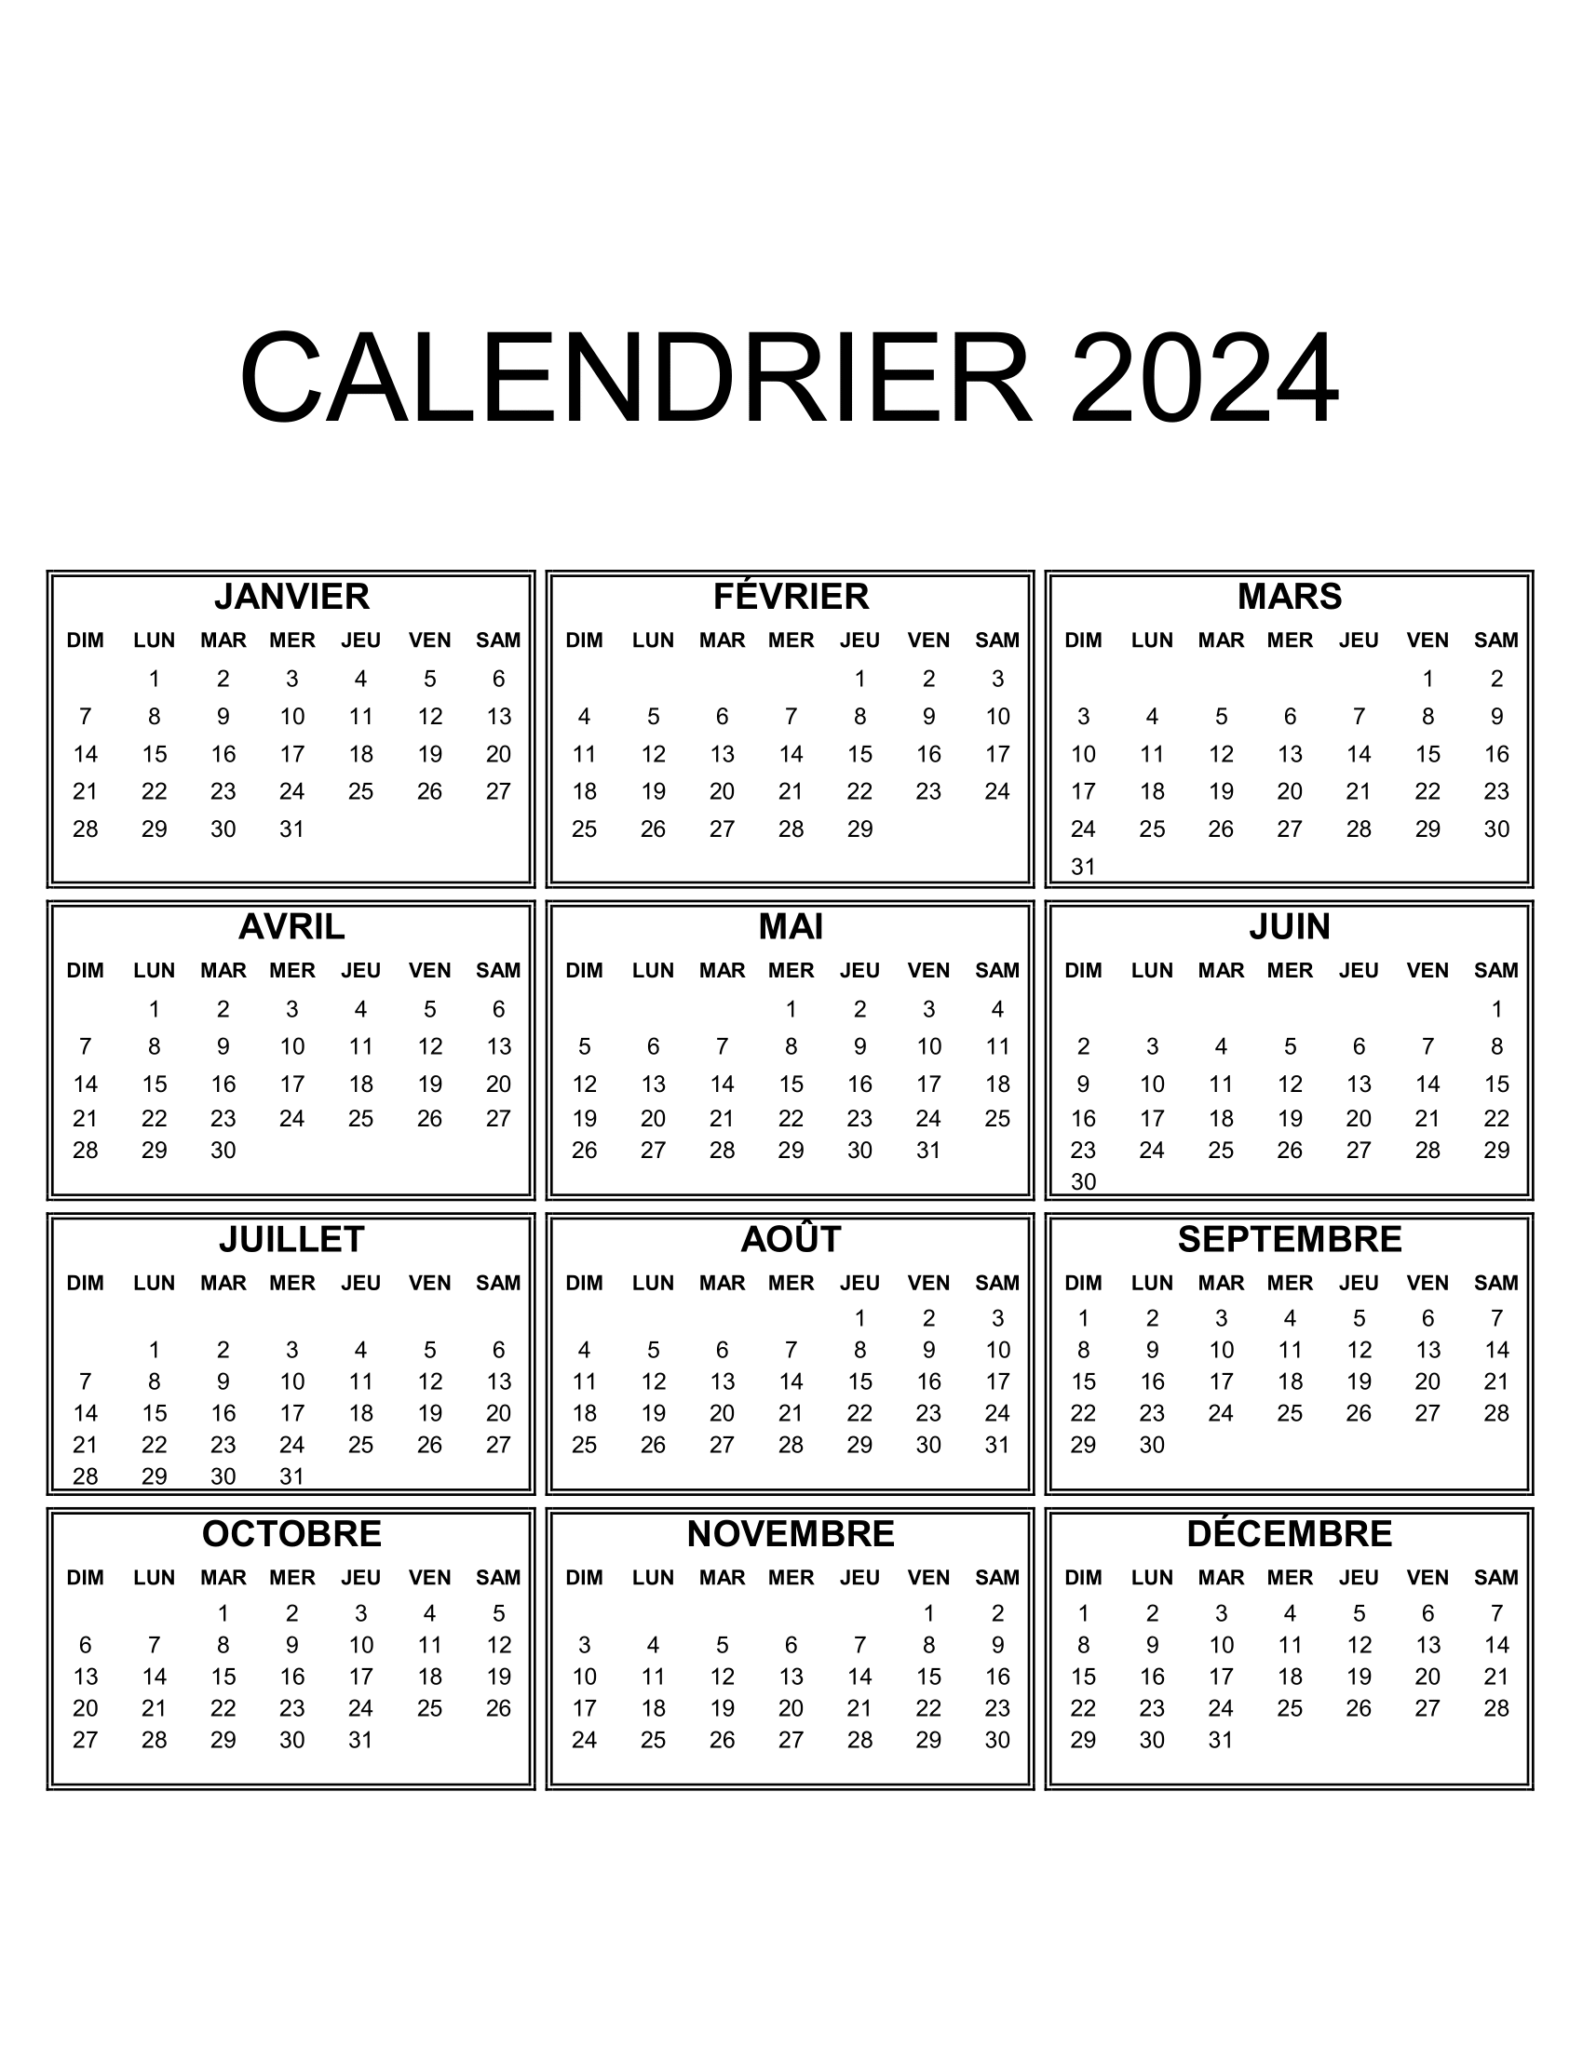 Calendrier Annuel 2024 à Imprimer Gratuit